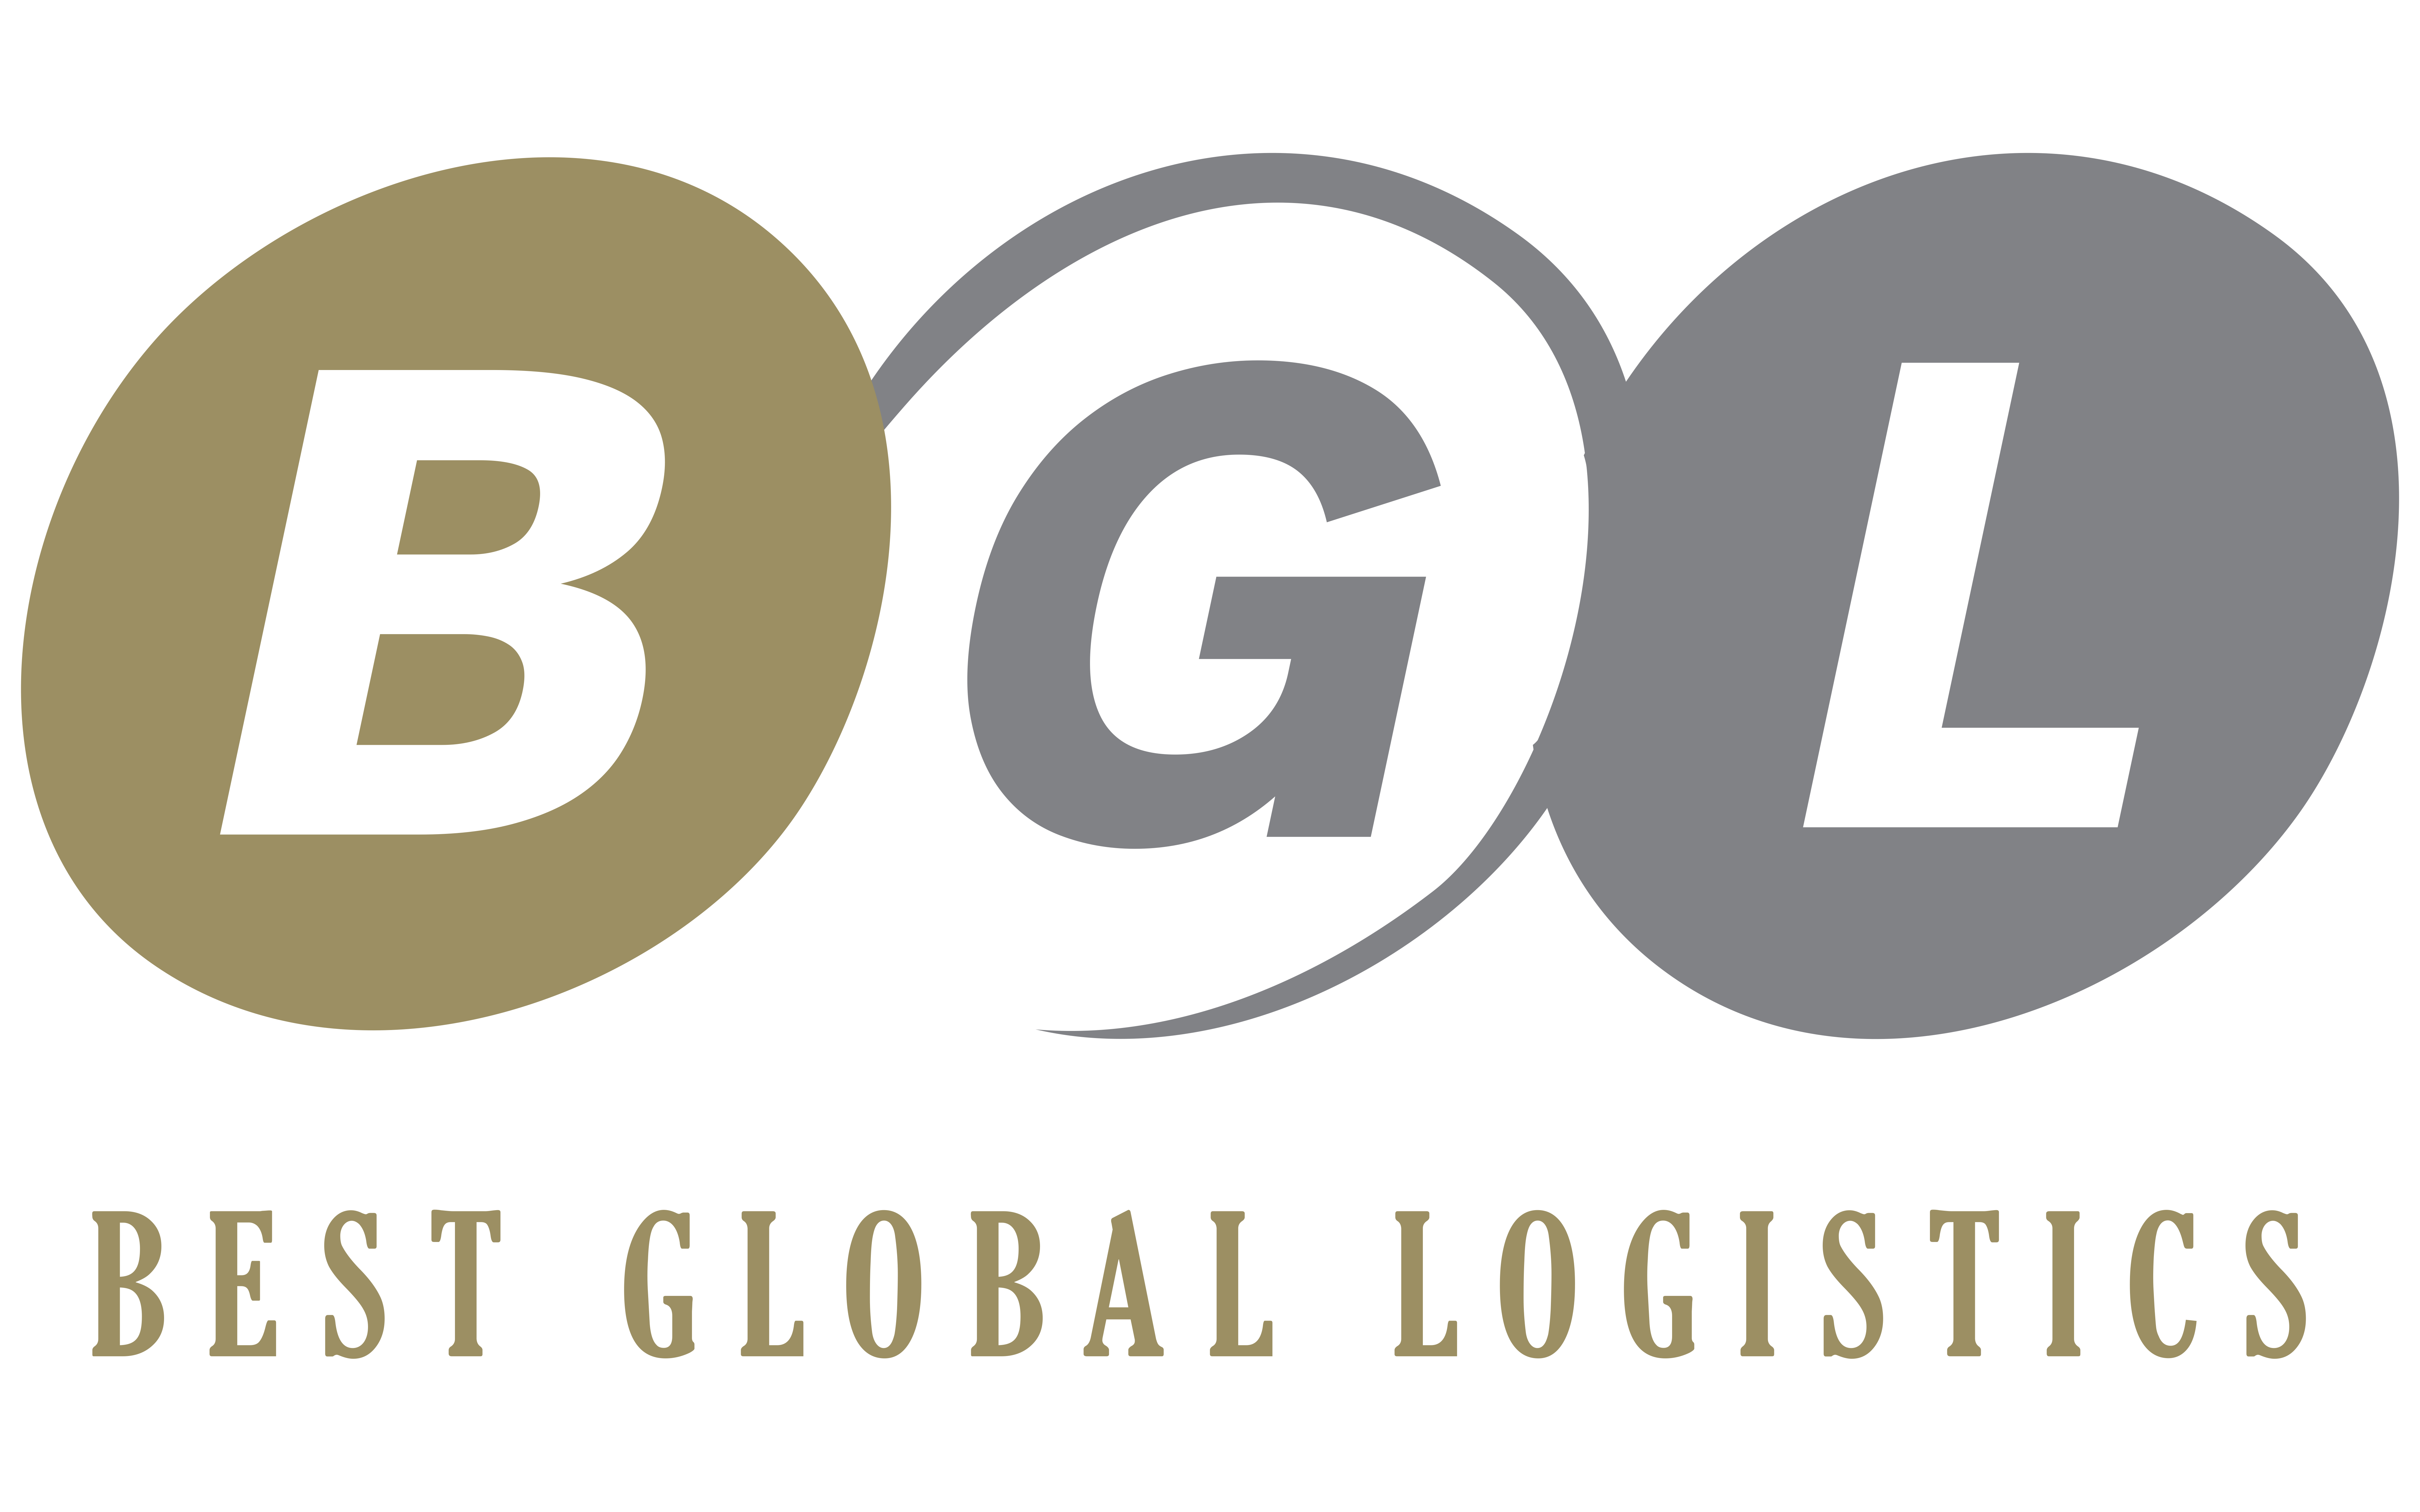 Best Global Logistics logo